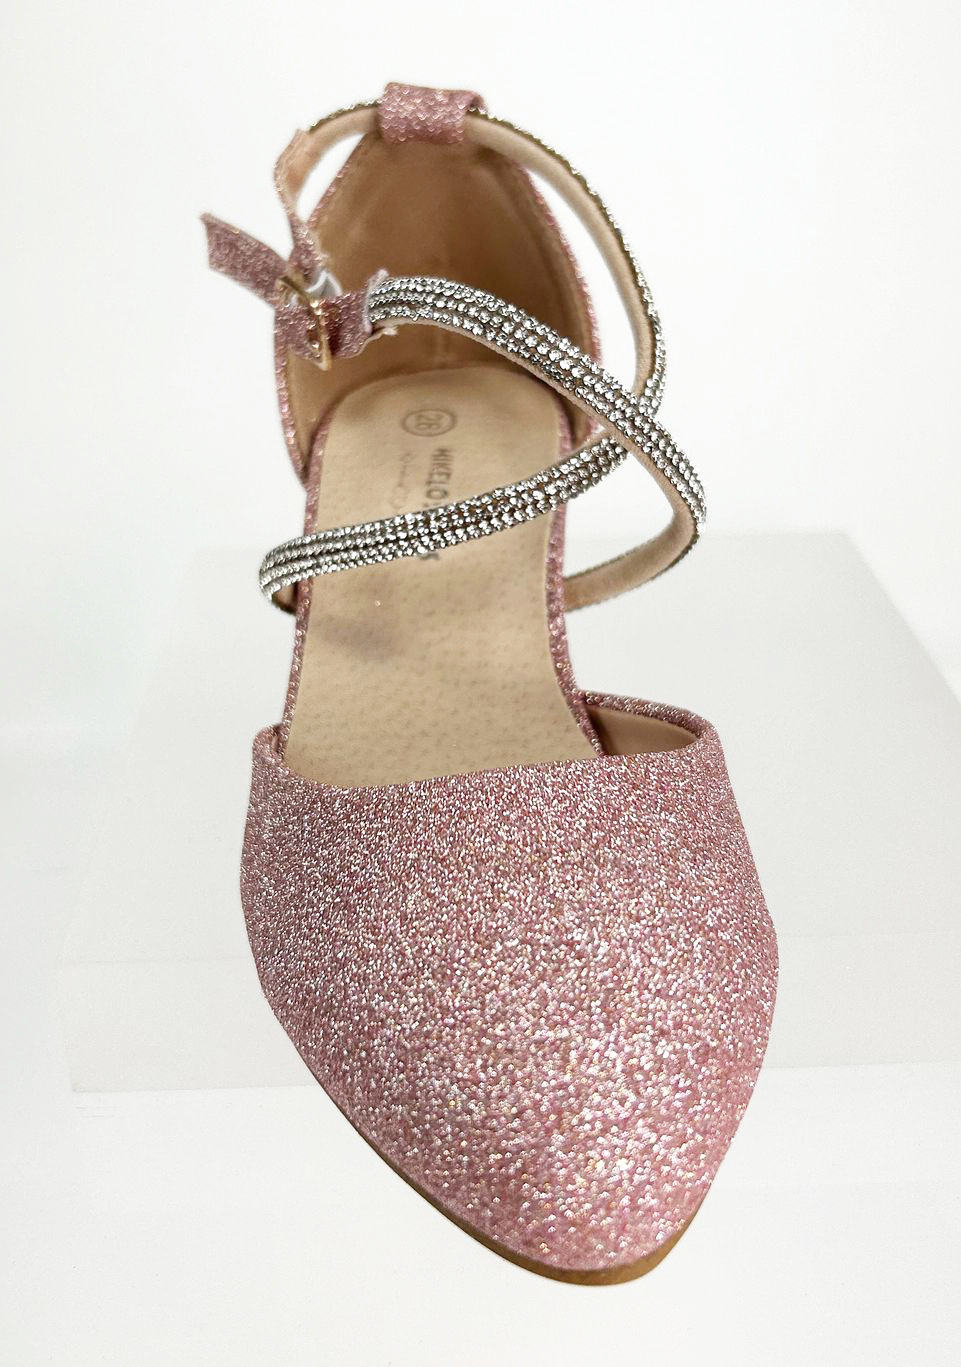 Meisjesschoenen Meisjesschoen - Spaanse schoentjes half open - glitters - roze - dubbele band